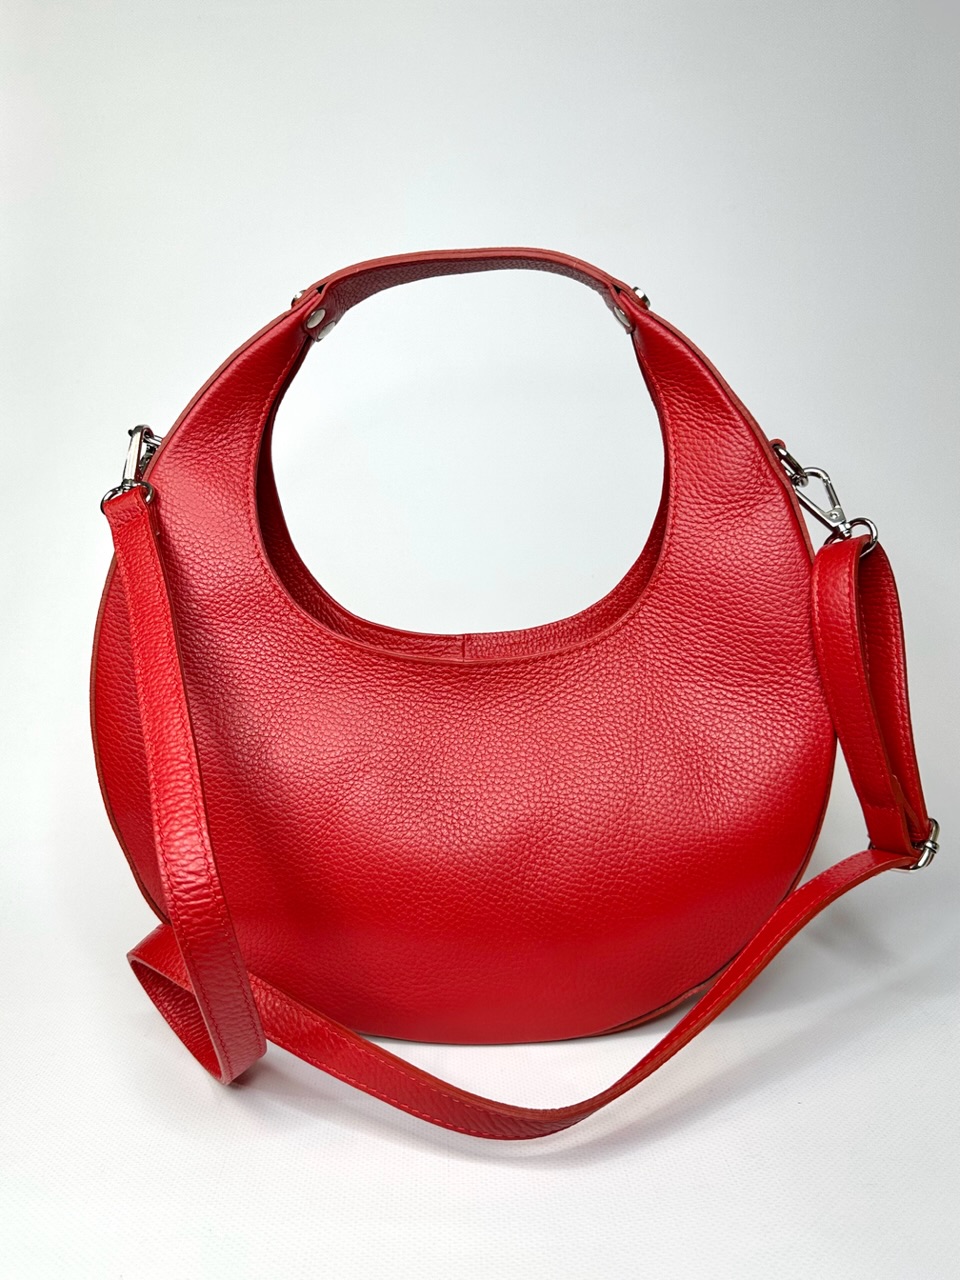 Женская красная итальянская круглая сумка луна на плечо из натуральной кожи vera pelle держит форму